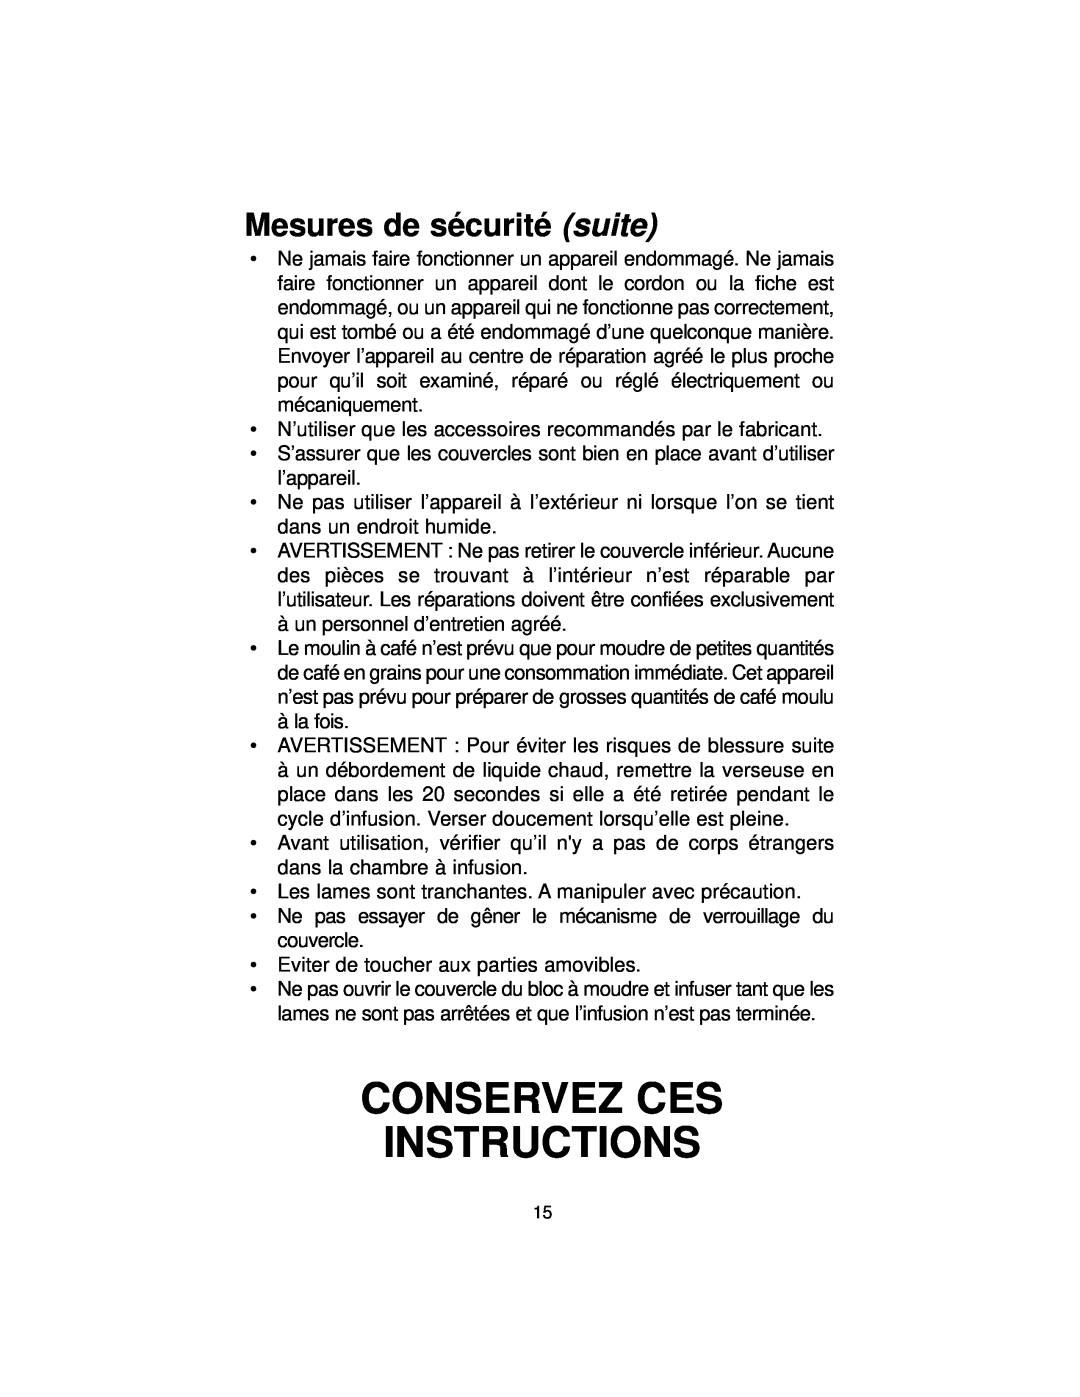 Melitta MB80 manual Conservez Ces Instructions, Mesures de sécurité suite 